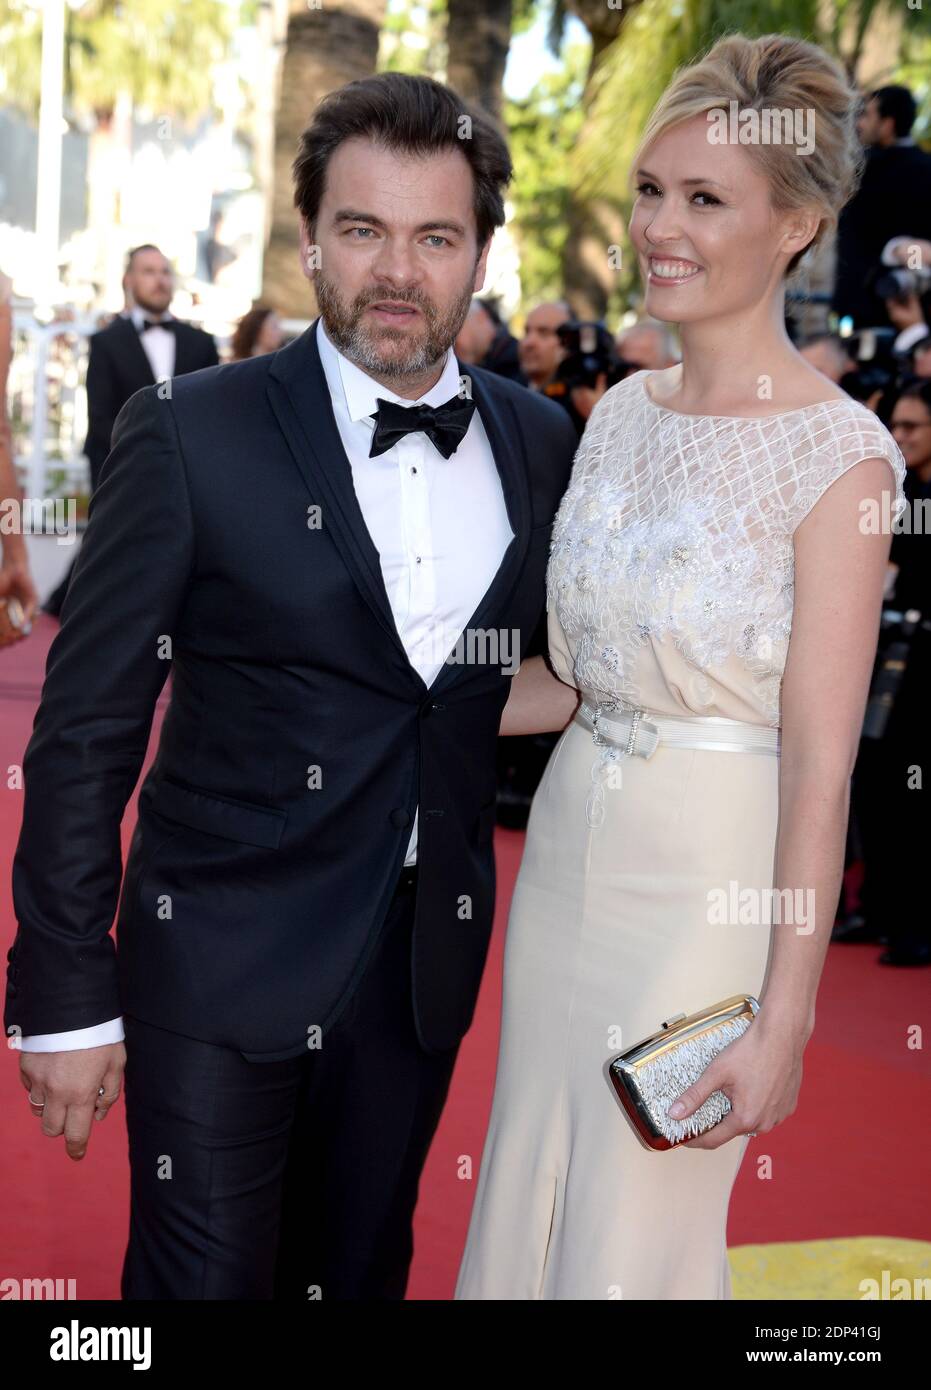 Lilou Fogli und Clovis Cornillac besuchen die Vorführung von "Inside Out" beim 68. Filmfestival von Cannes am 18. Mai 2015 in Cannes, Frankreich. Foto von Lionel Hahn/ABACAPRESS.COM Stockfoto